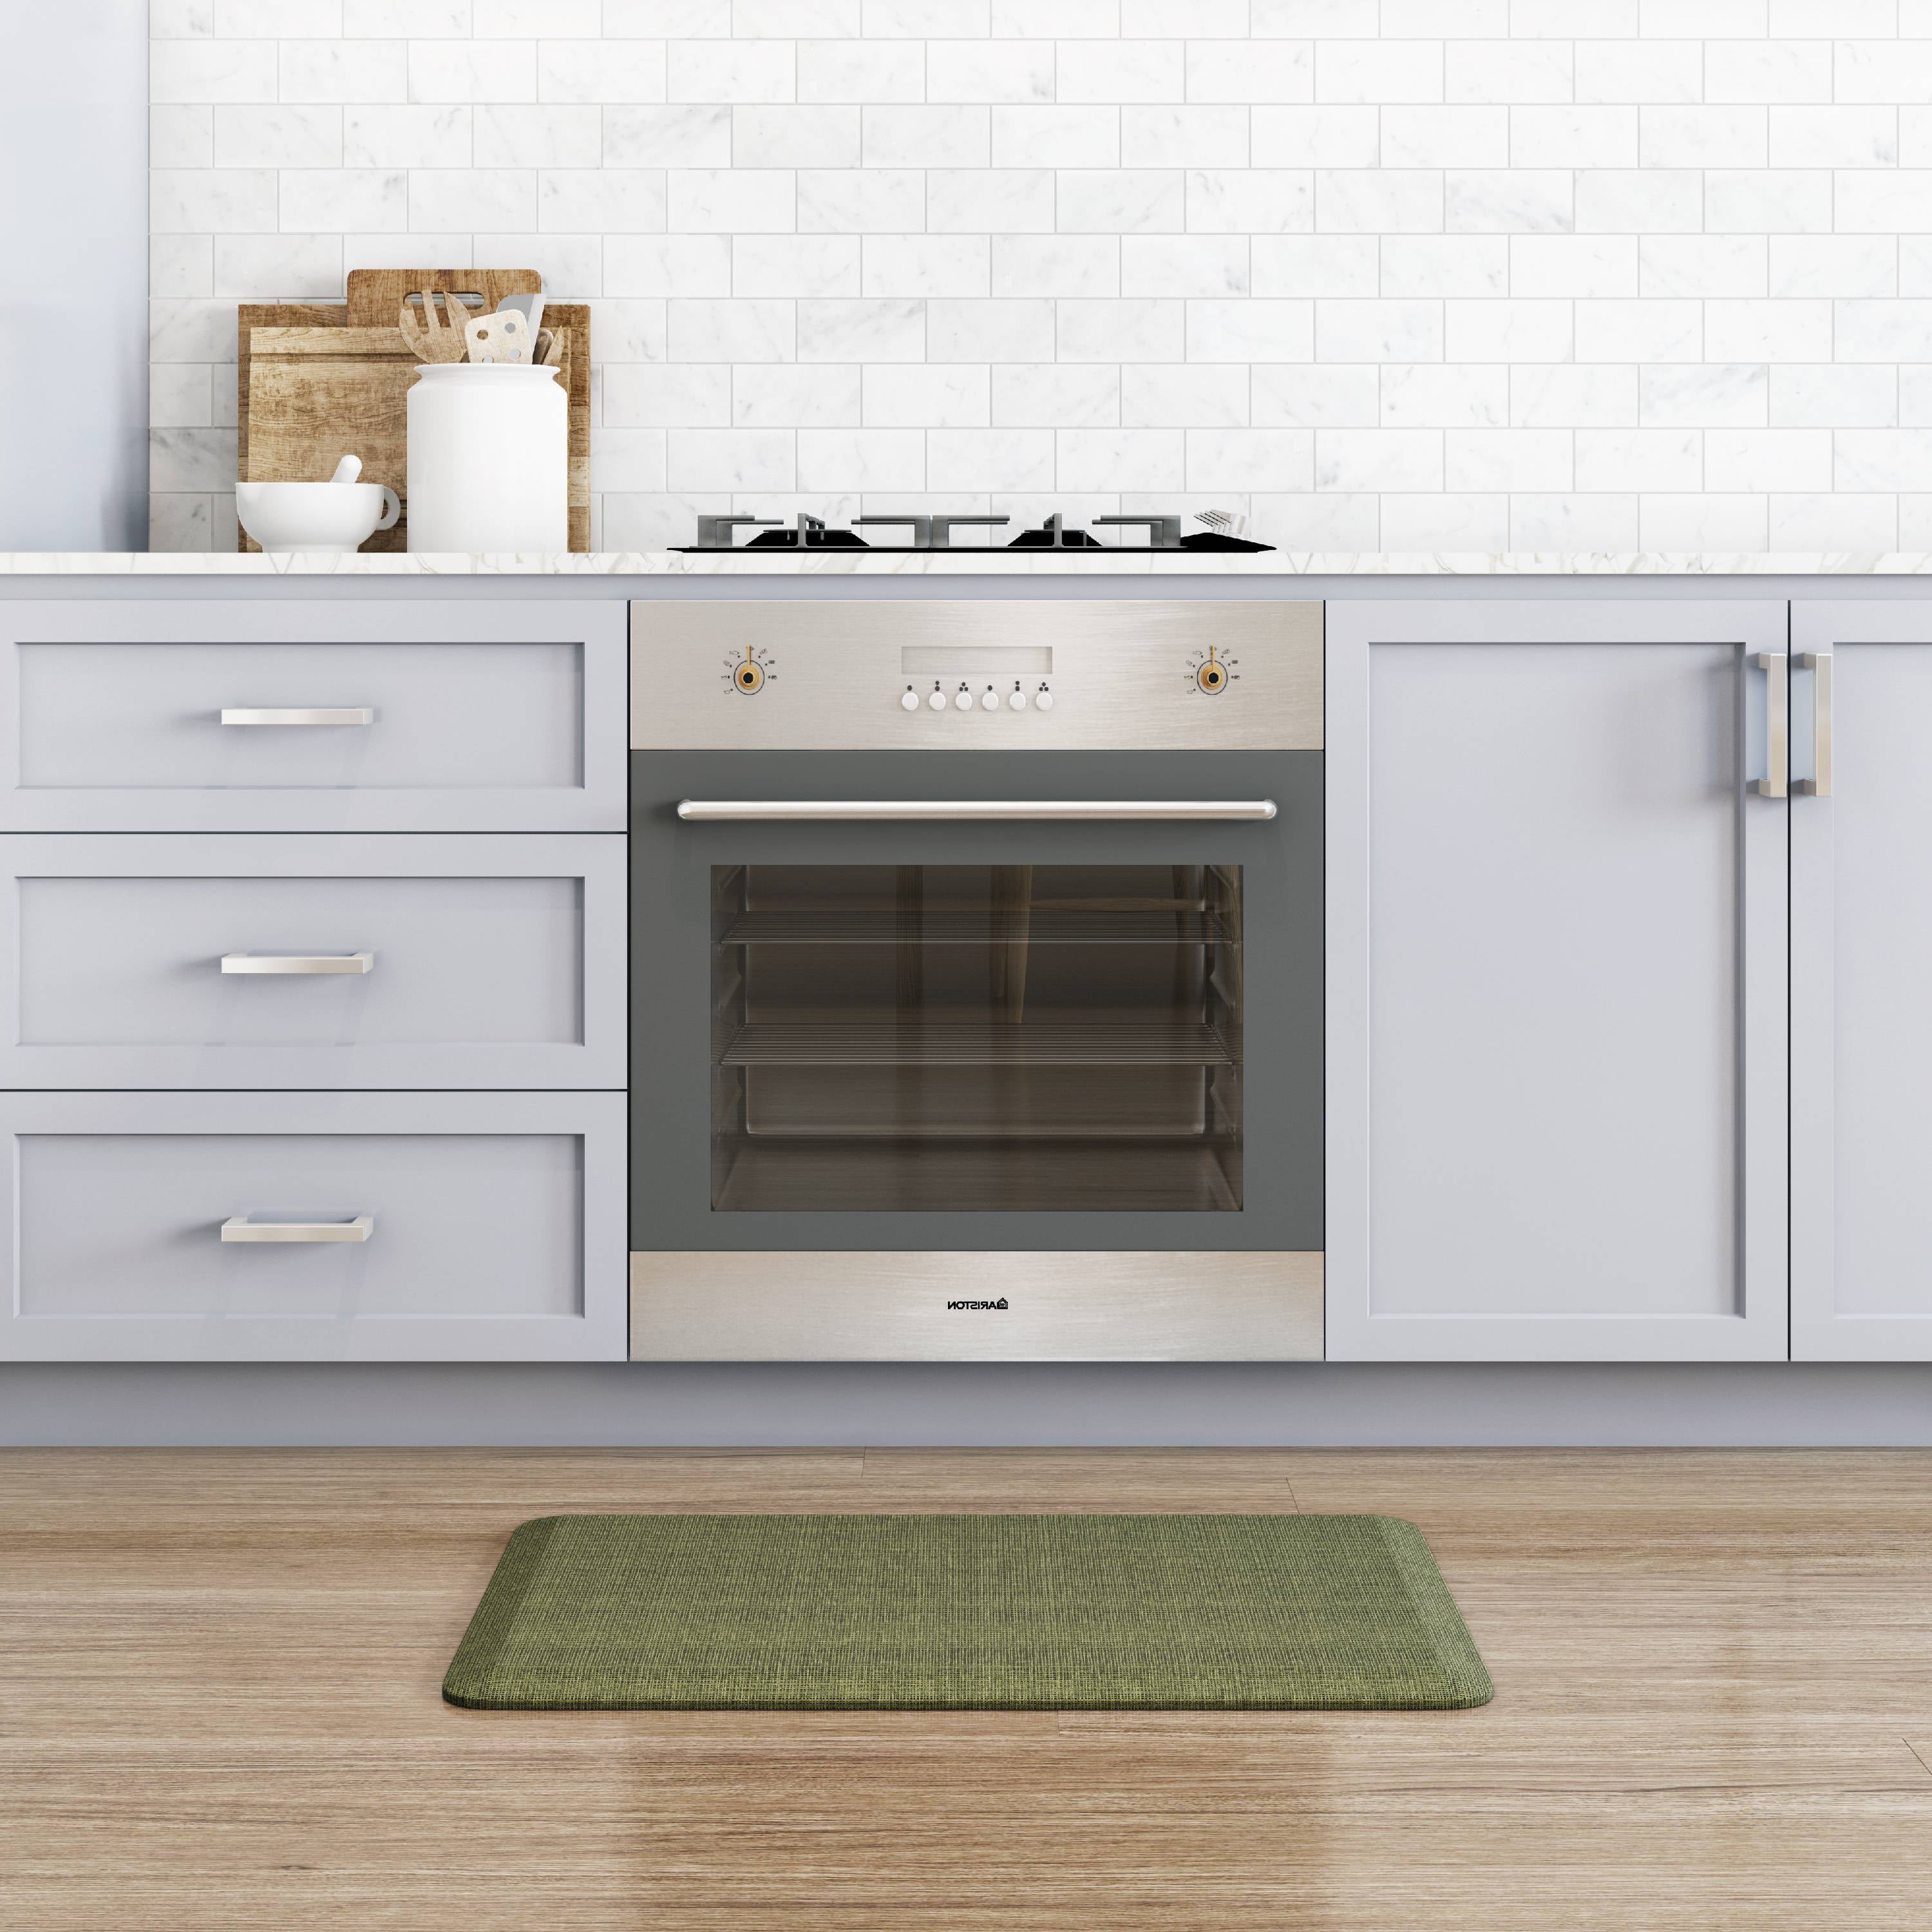 GelPro Newlife Designer Comfort Kitchen Floor Mat 20 inch x 32 inch Tweed Antique White